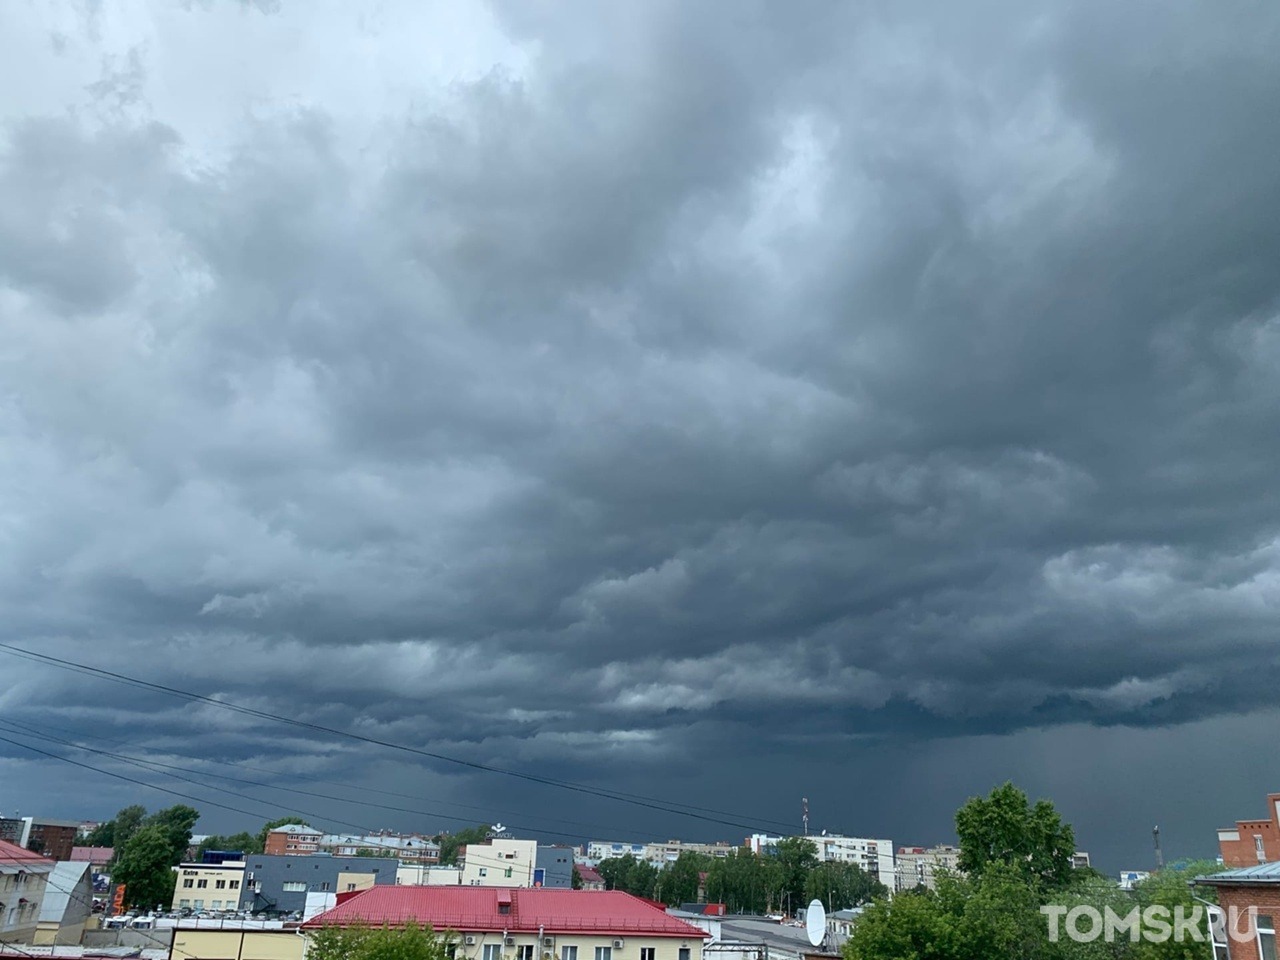 Гидрометцентр: в понедельник в Томске ожидаются грозы, ливни и град 